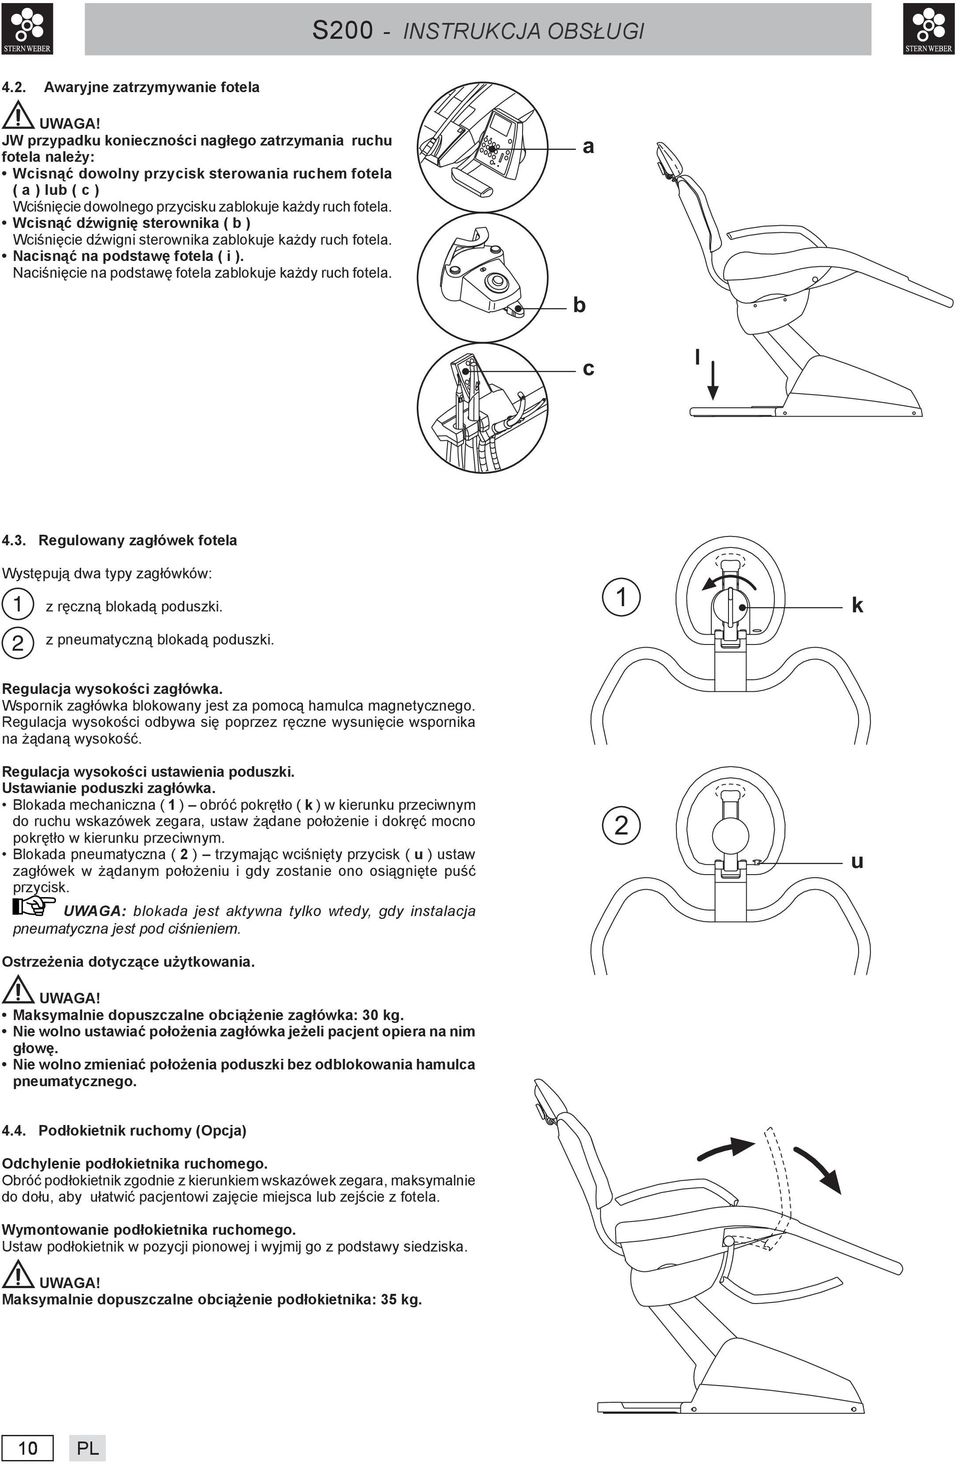 Awaryjne zatrzymywanie fotela JW przypadku konieczności nagłego zatrzymania ruchu fotela należy: Wcisnąć dowolny przycisk sterowania ruchem fotela ( a ) lub ( c ) Wciśnięcie dowolnego przycisku